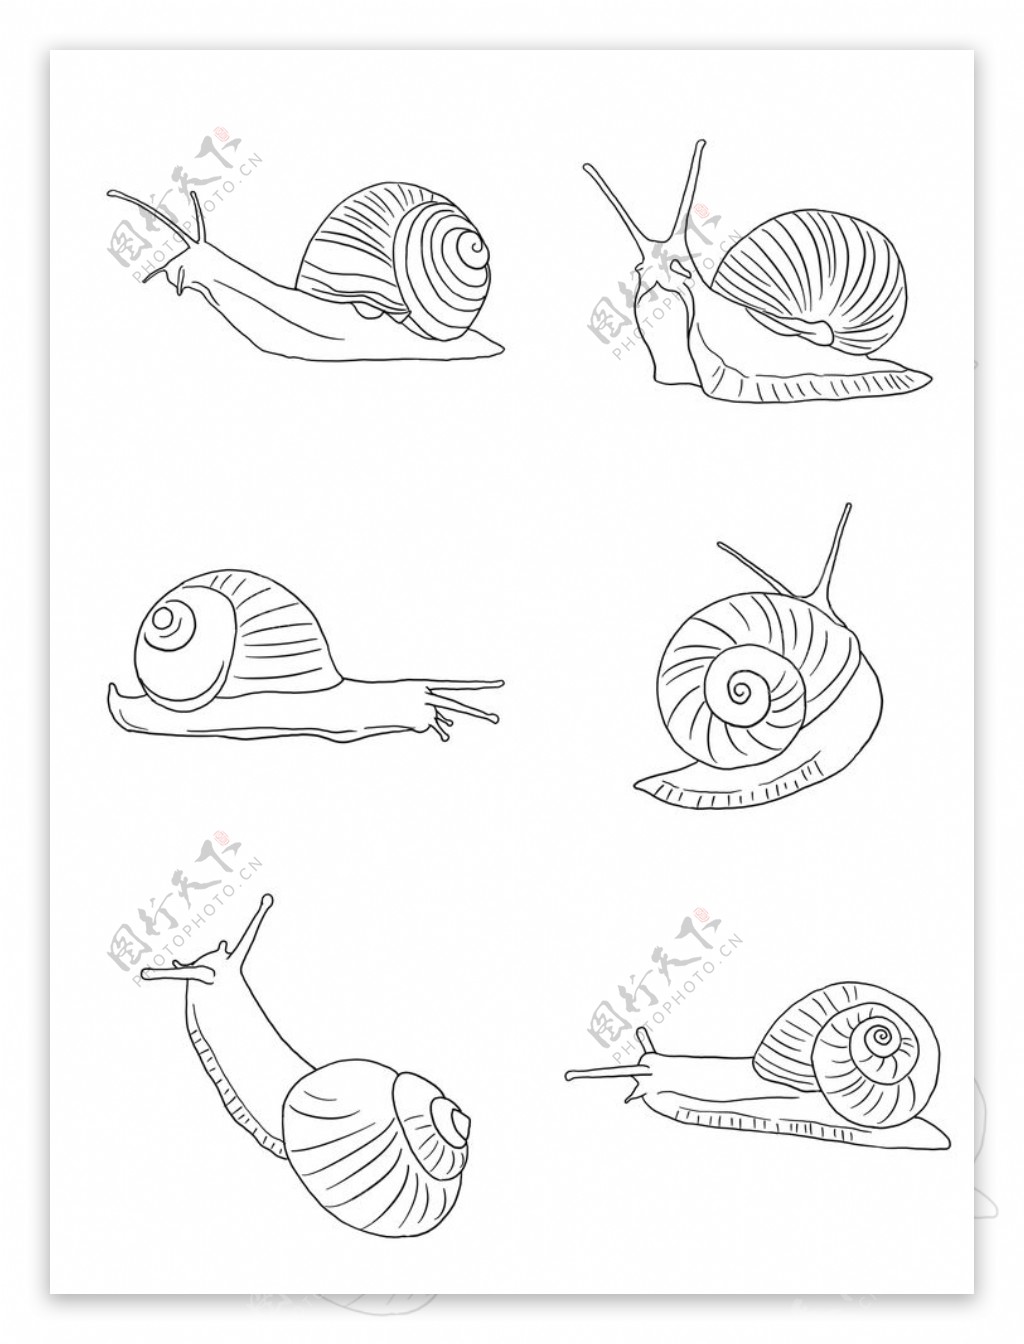 蜗牛线条插画图片